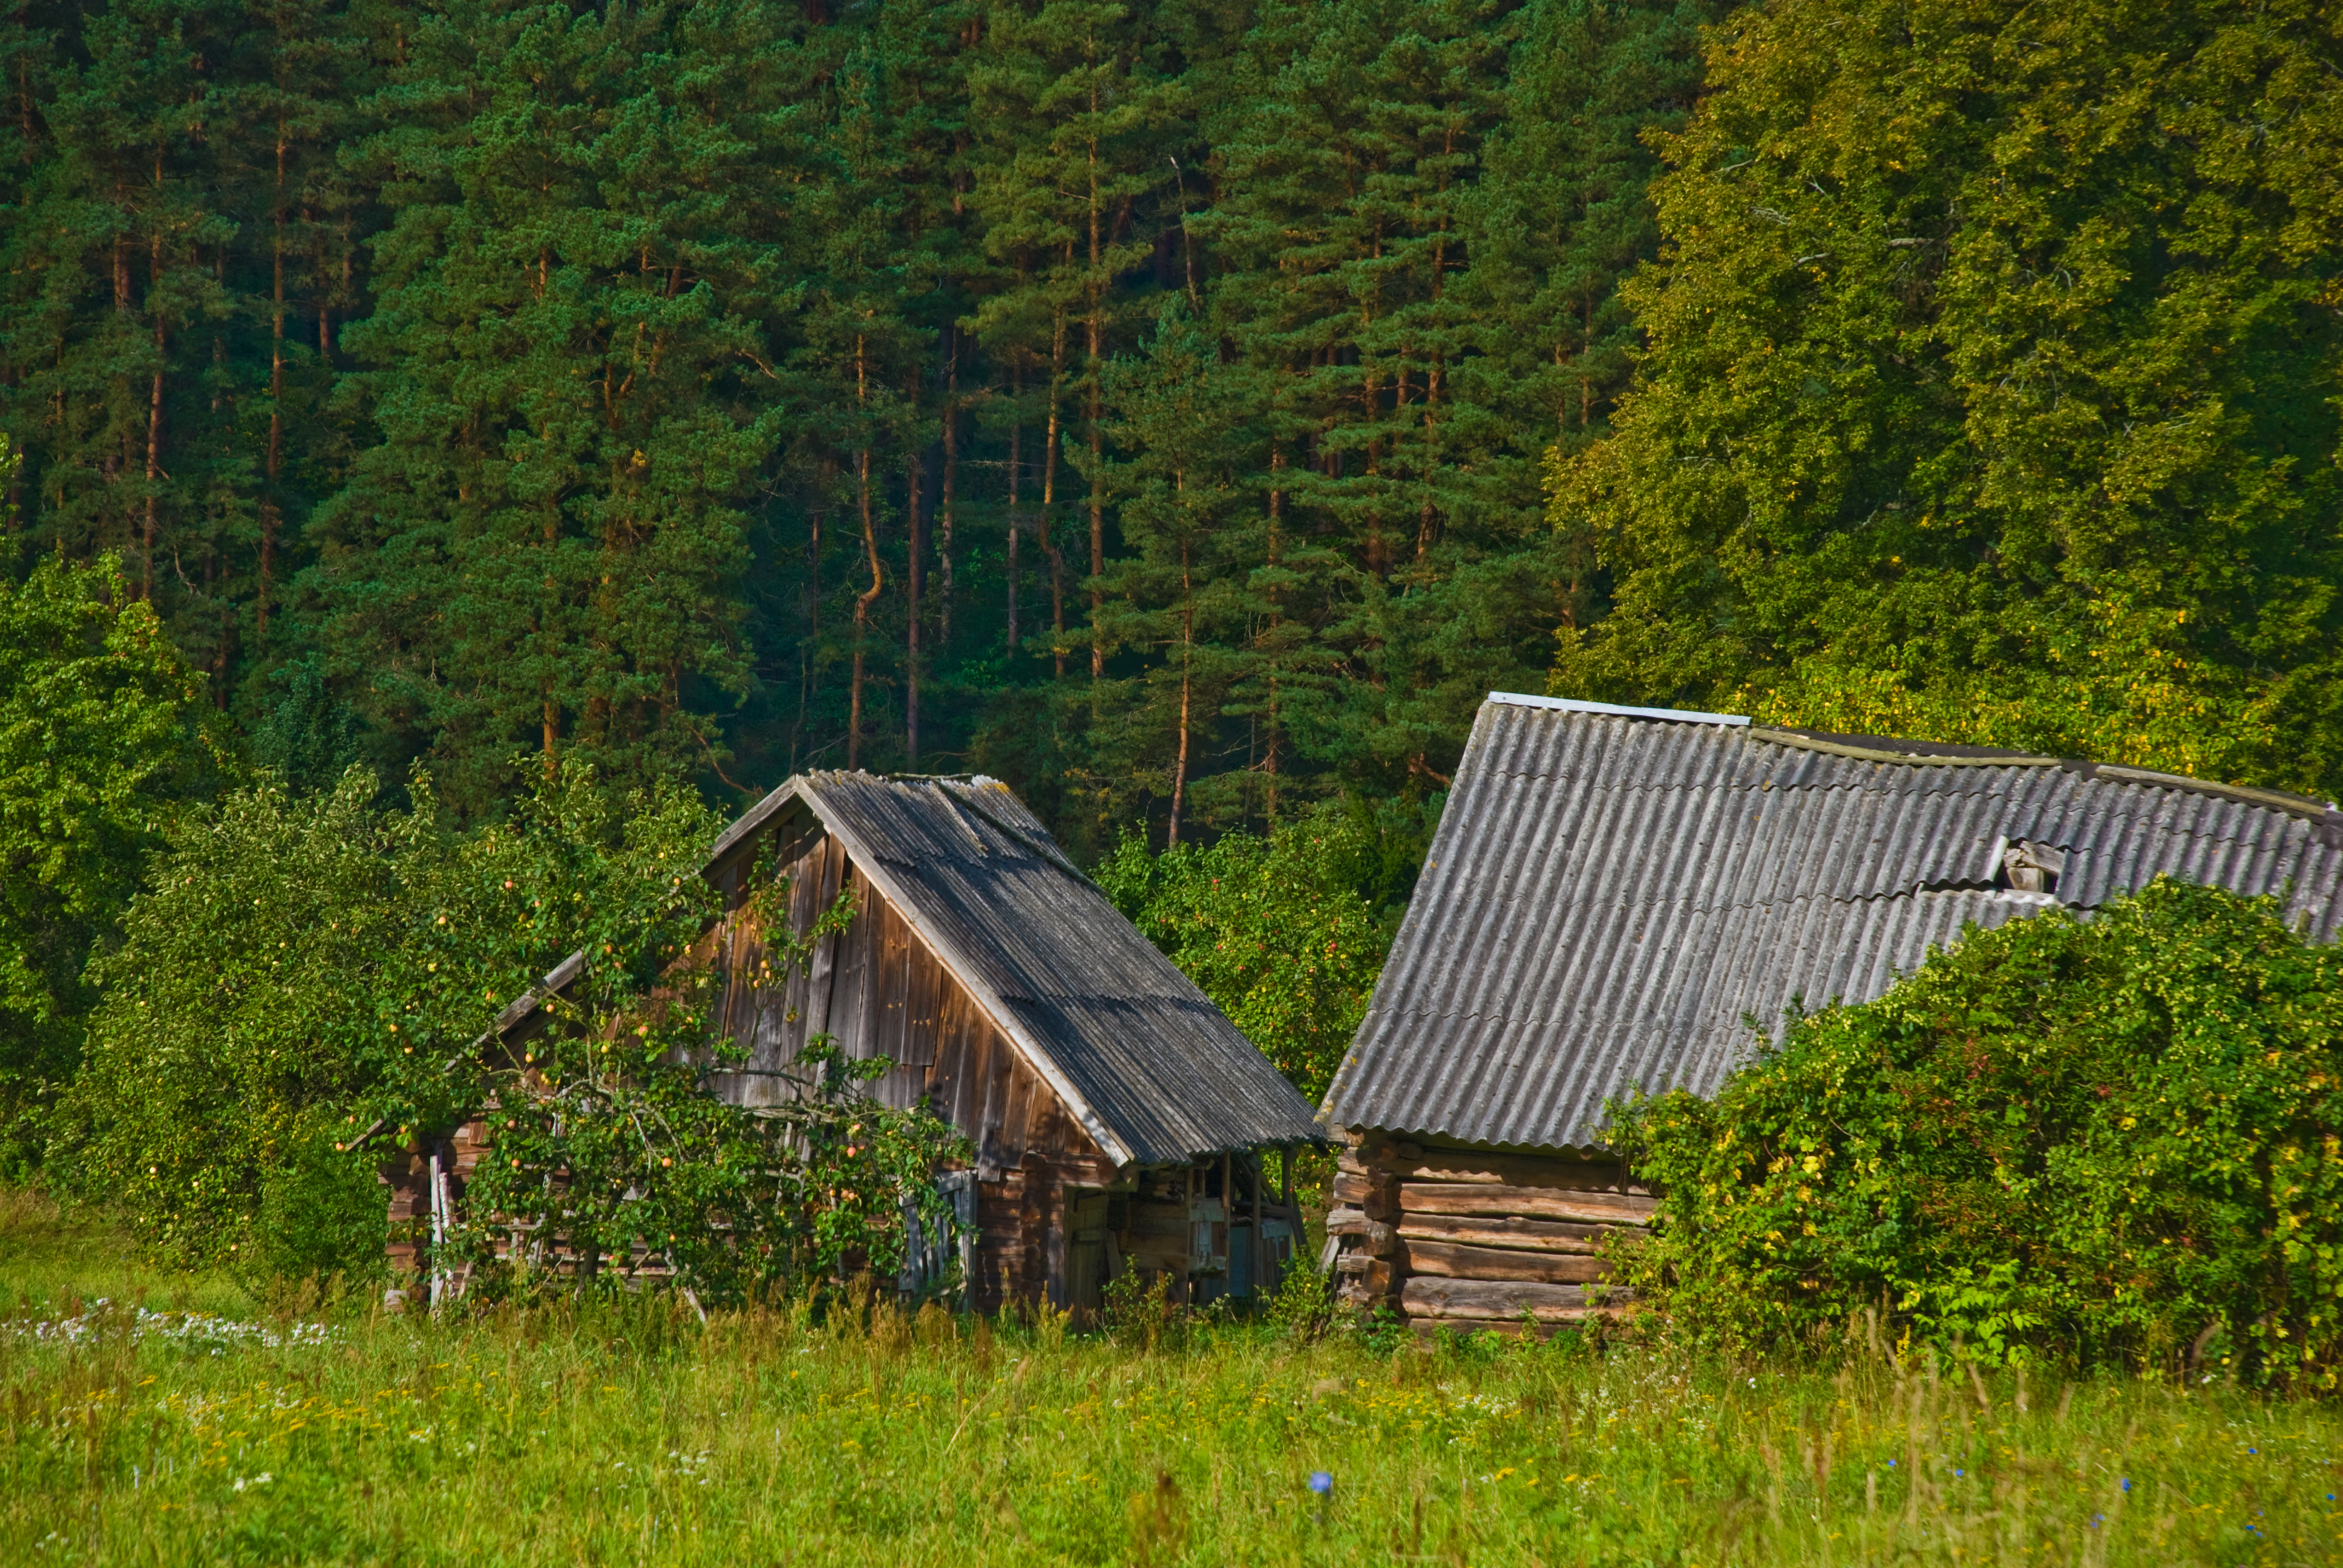 File:Near Kernave, Lithuania, 11 Sept. 2008 - Flickr - PhillipC.jpg ...